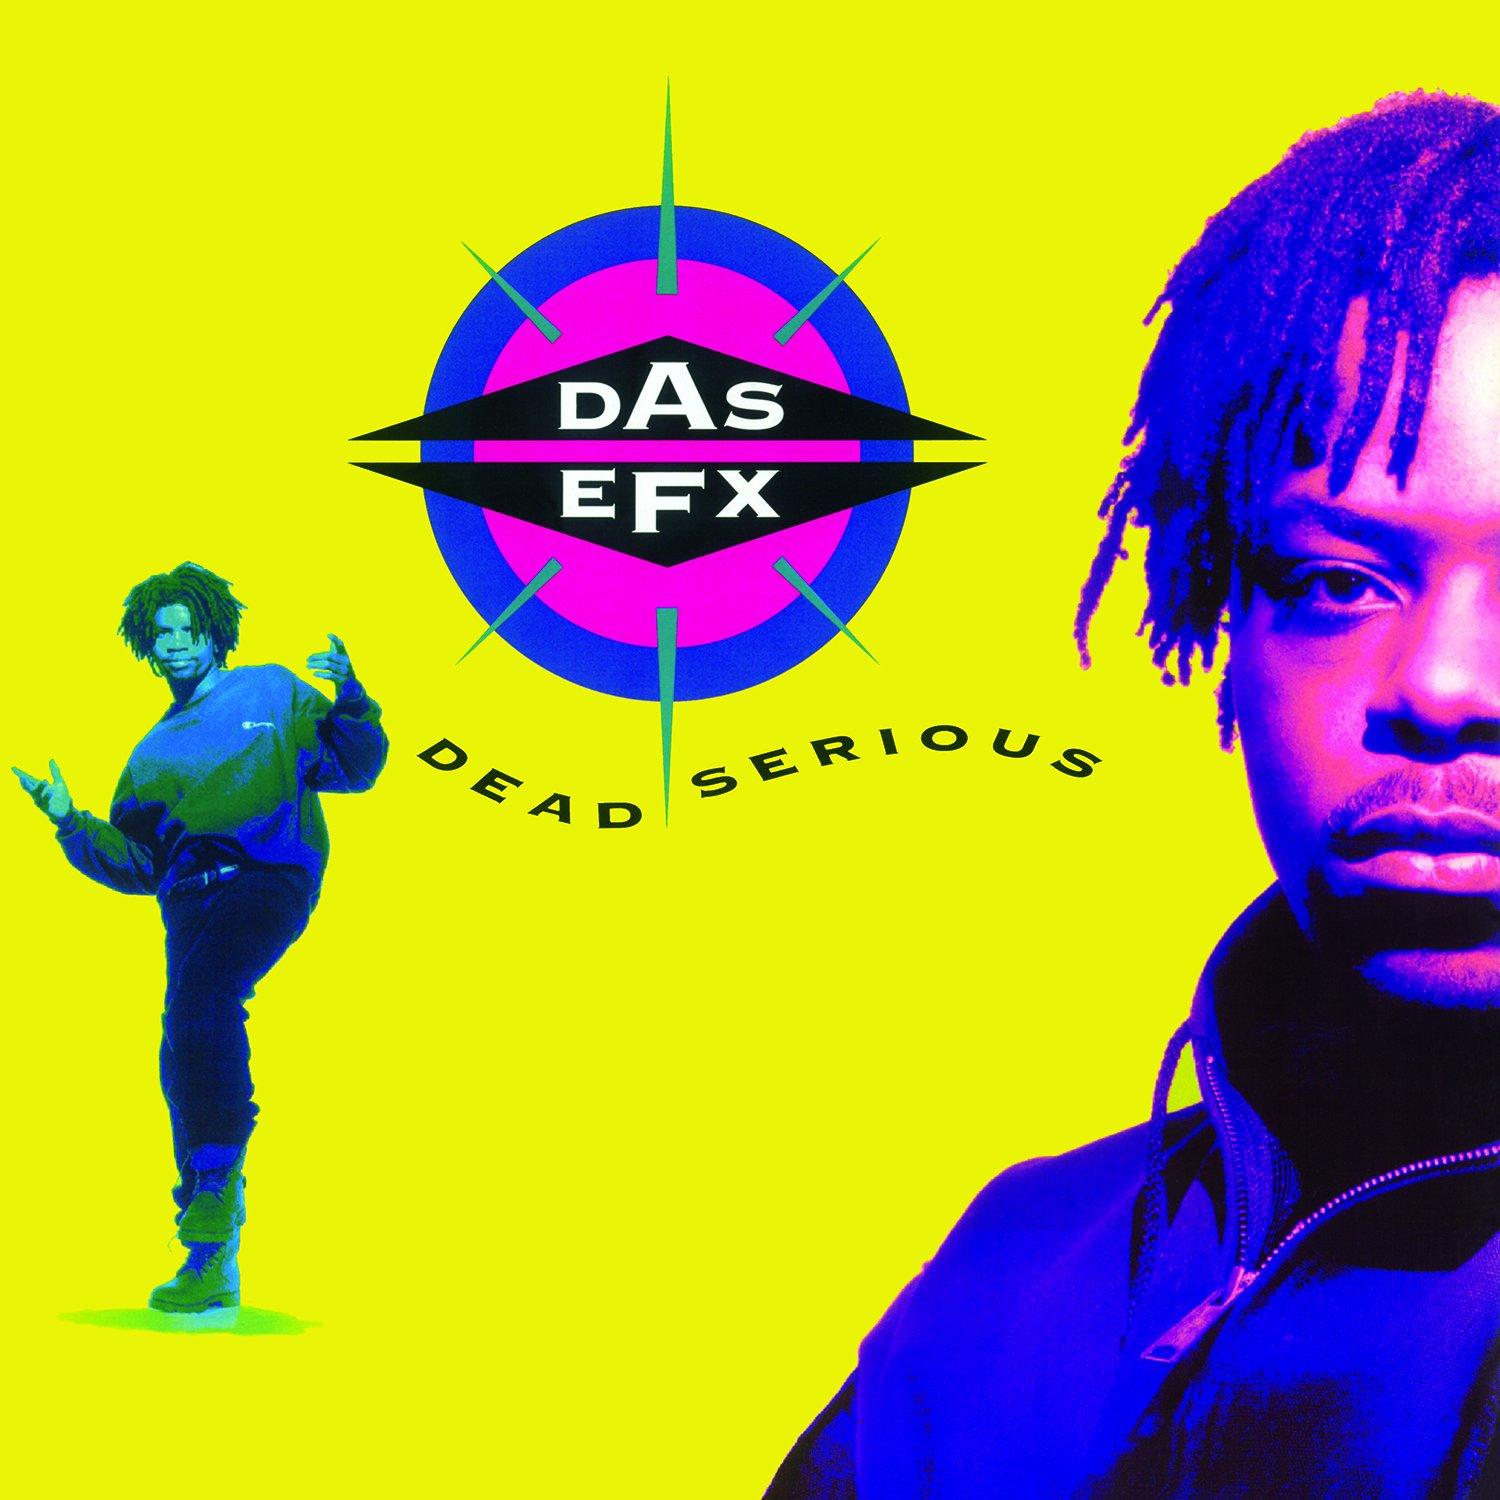 DAS EFX - Dead serious -HQ- Insert